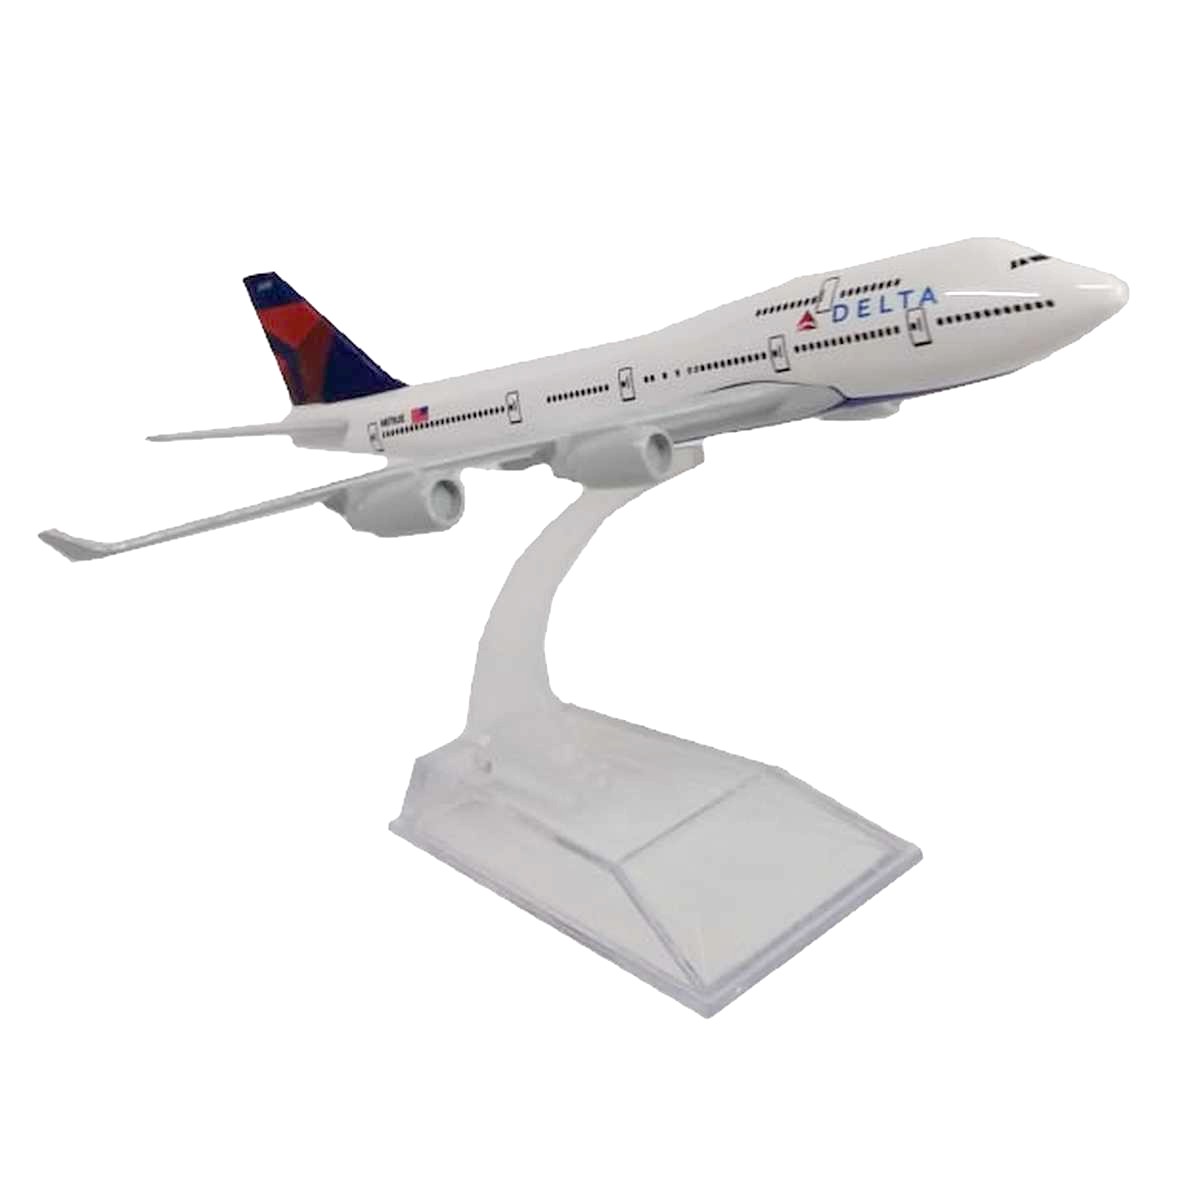 Miniatura de avião em metal da Delta Air lines Boeing 747 na caixa